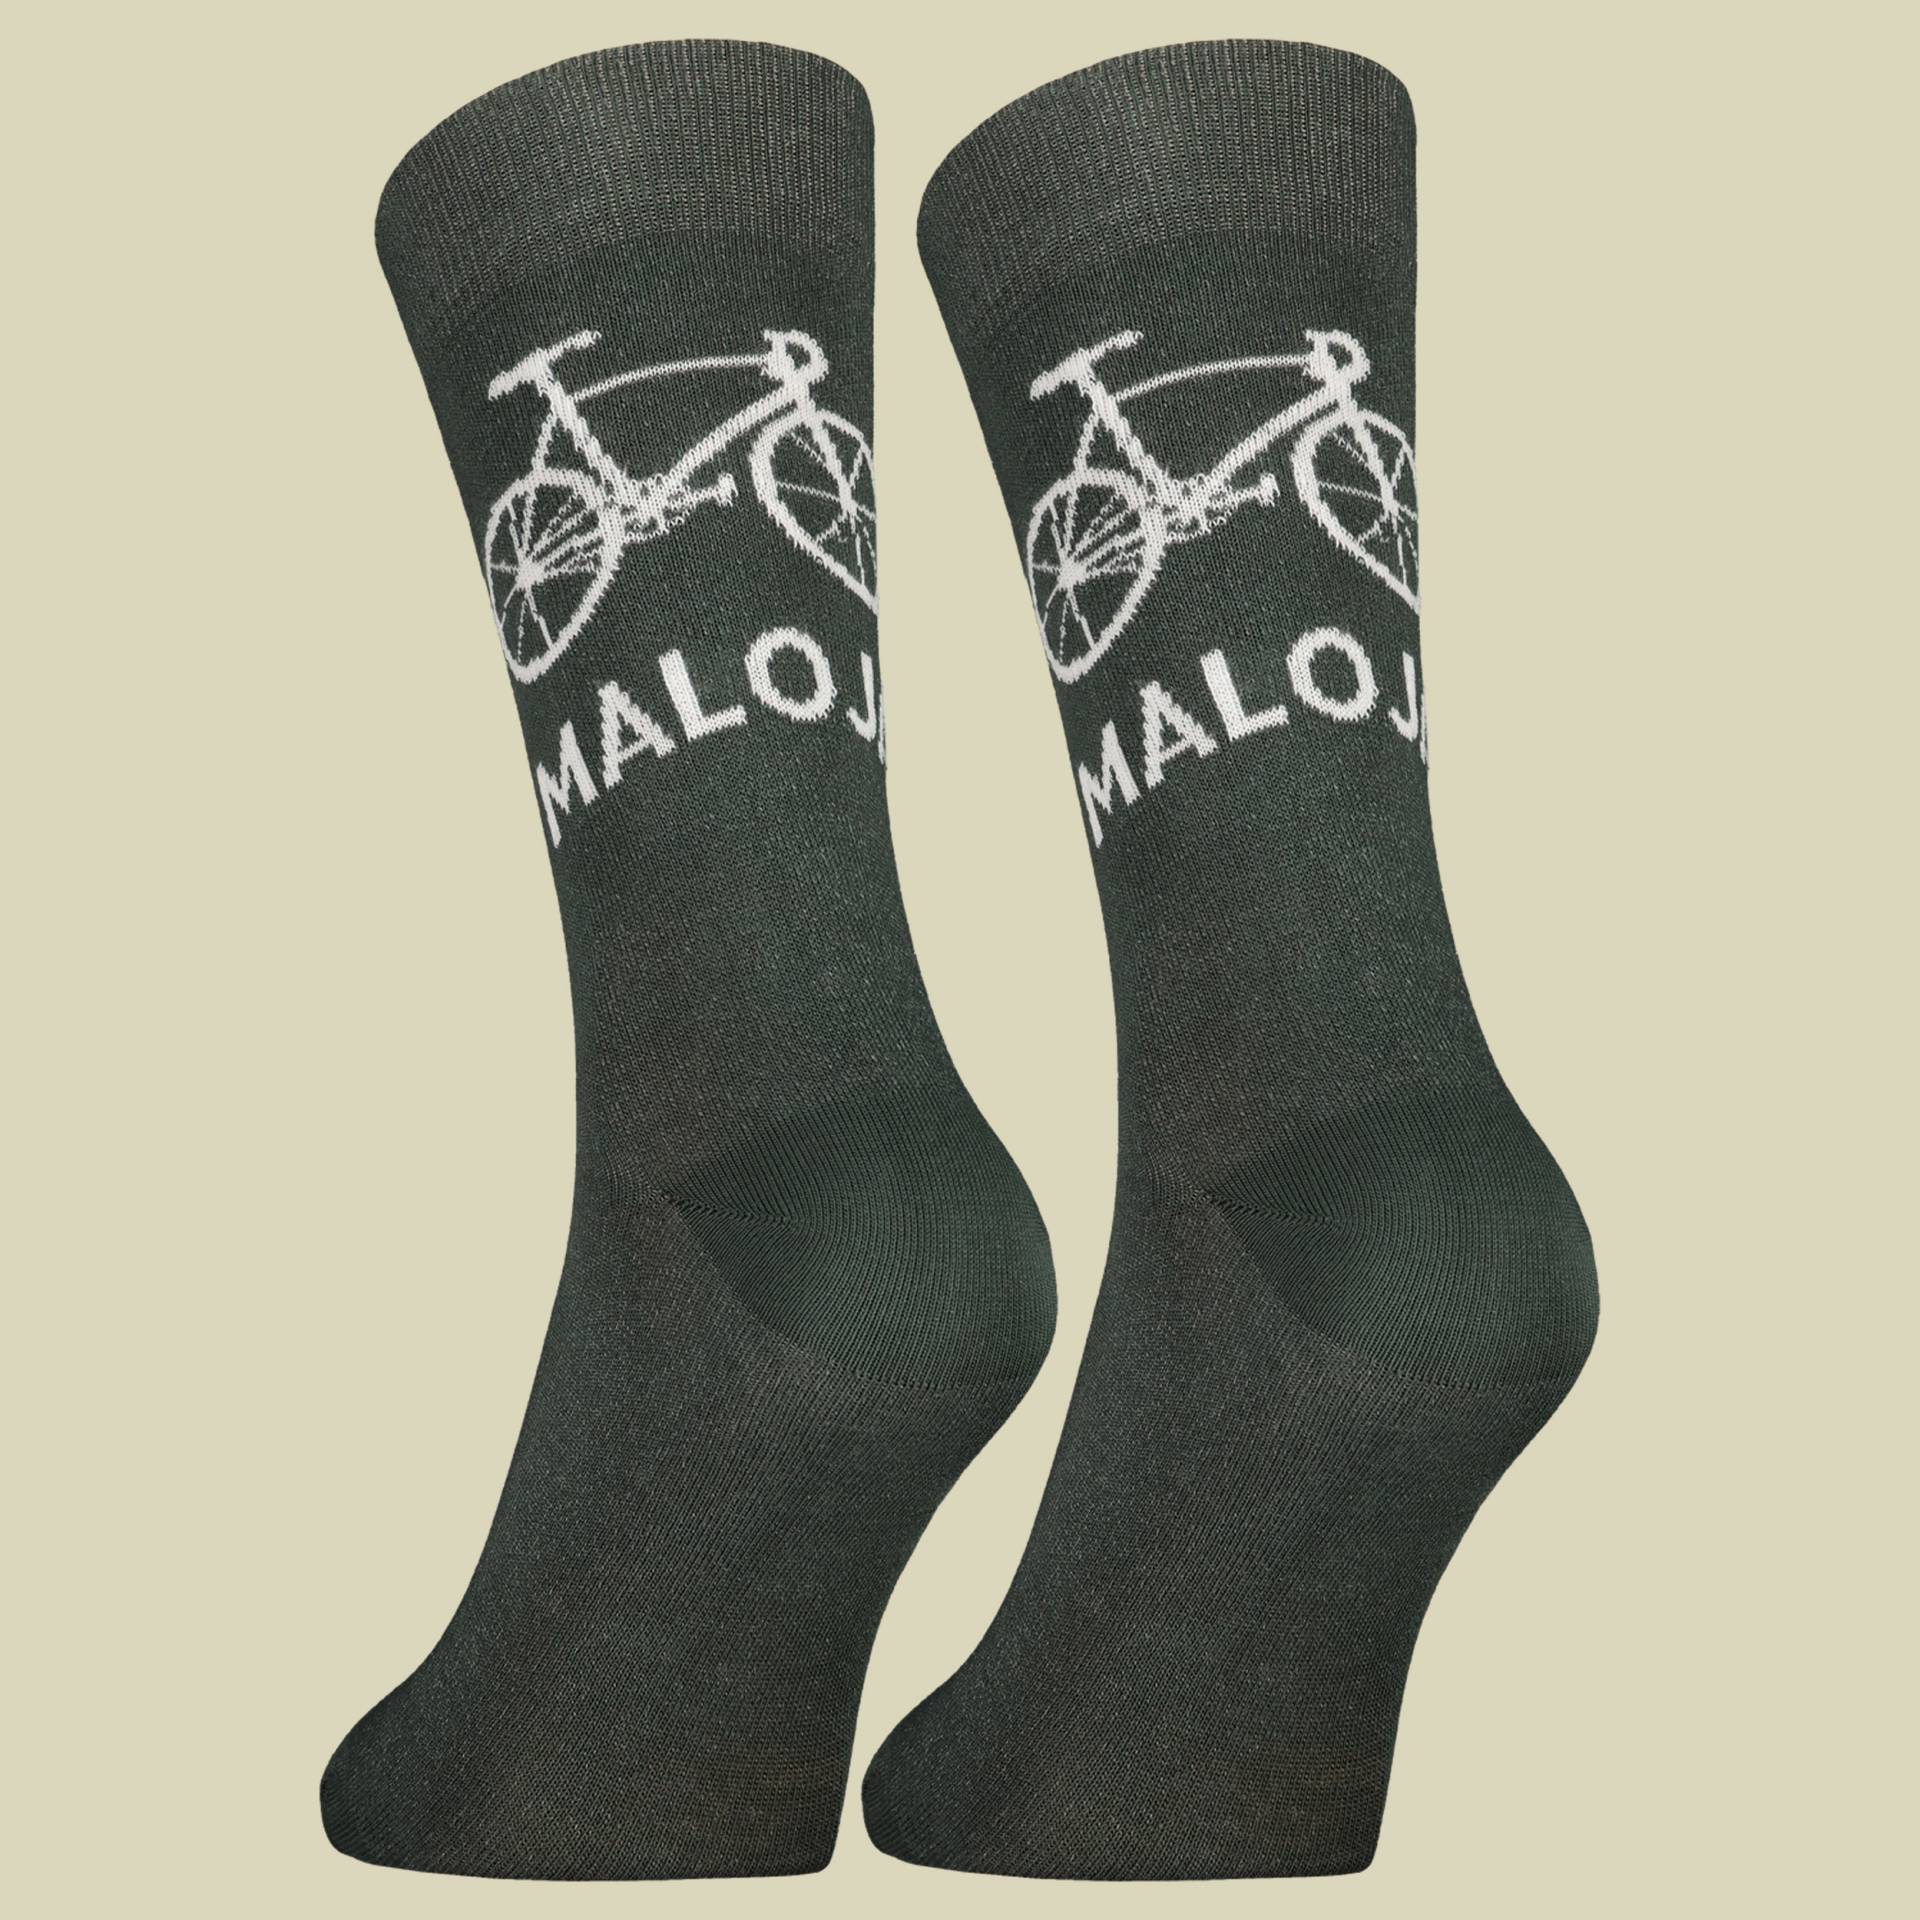 StalkM. Socks Men Größe 43-46 Farbe deep forest von Maloja